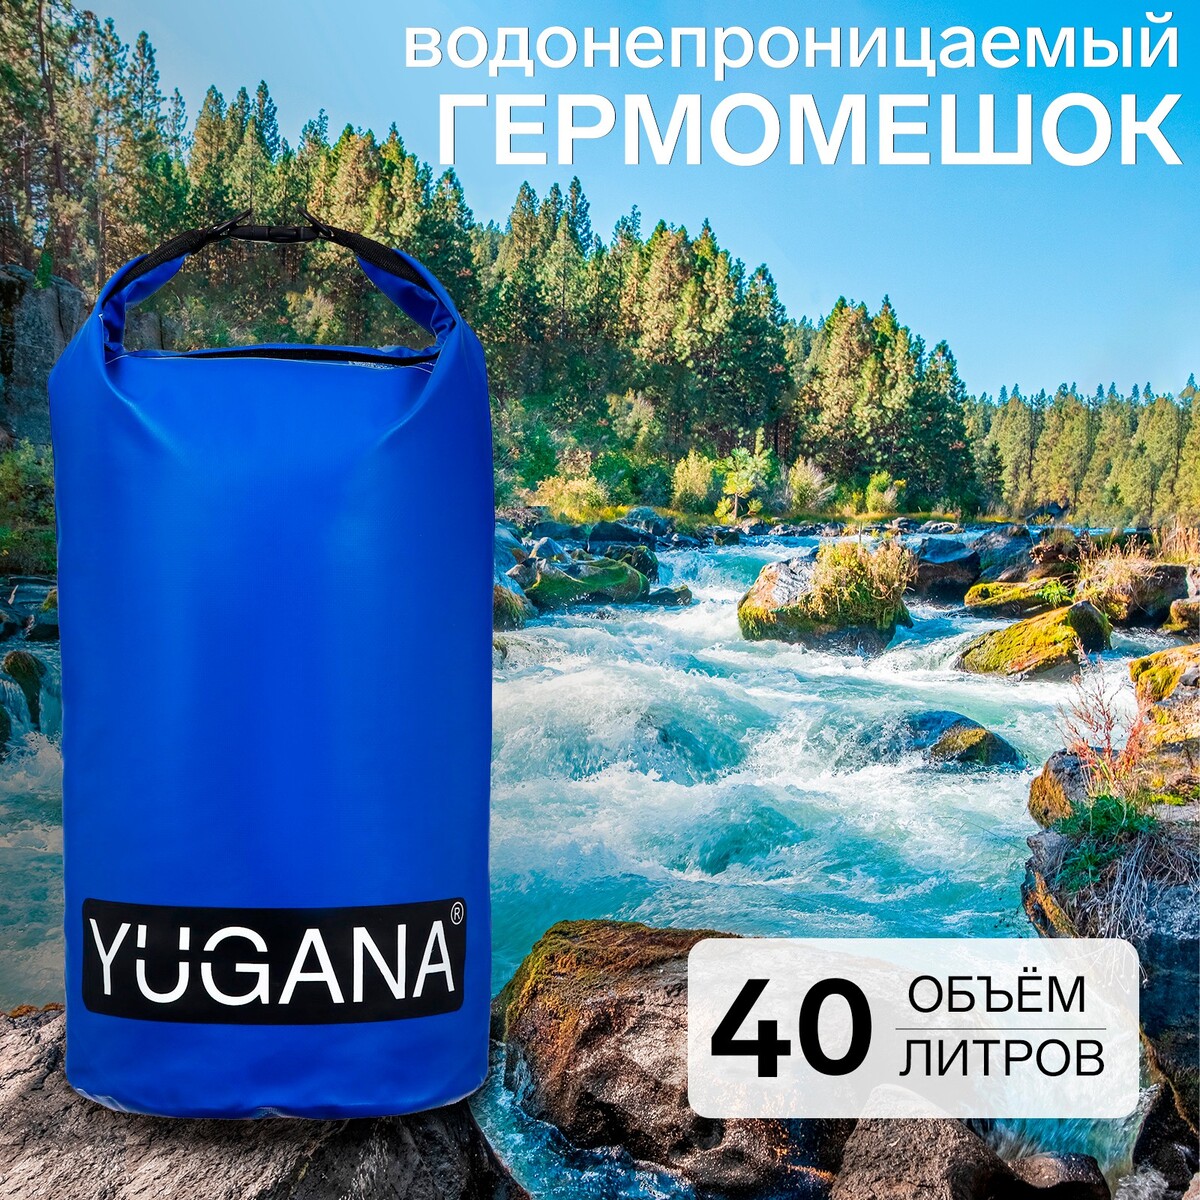 фото Гермомешок yugana, пвх, водонепроницаемый 40 литров, два ремня, синий